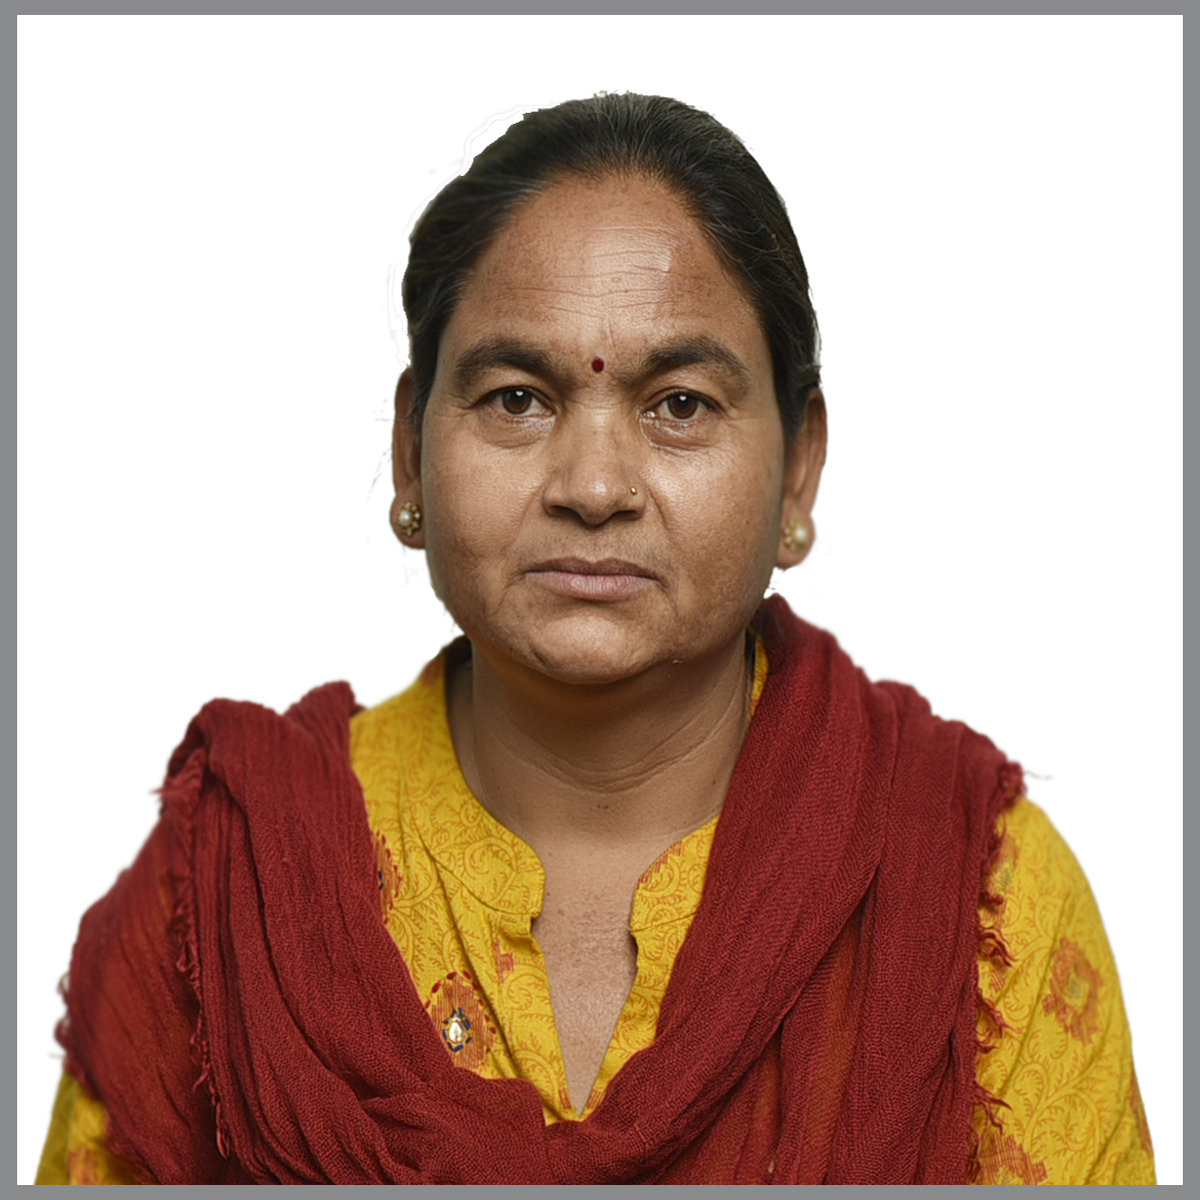 Ms. Ram Kumari Rijal